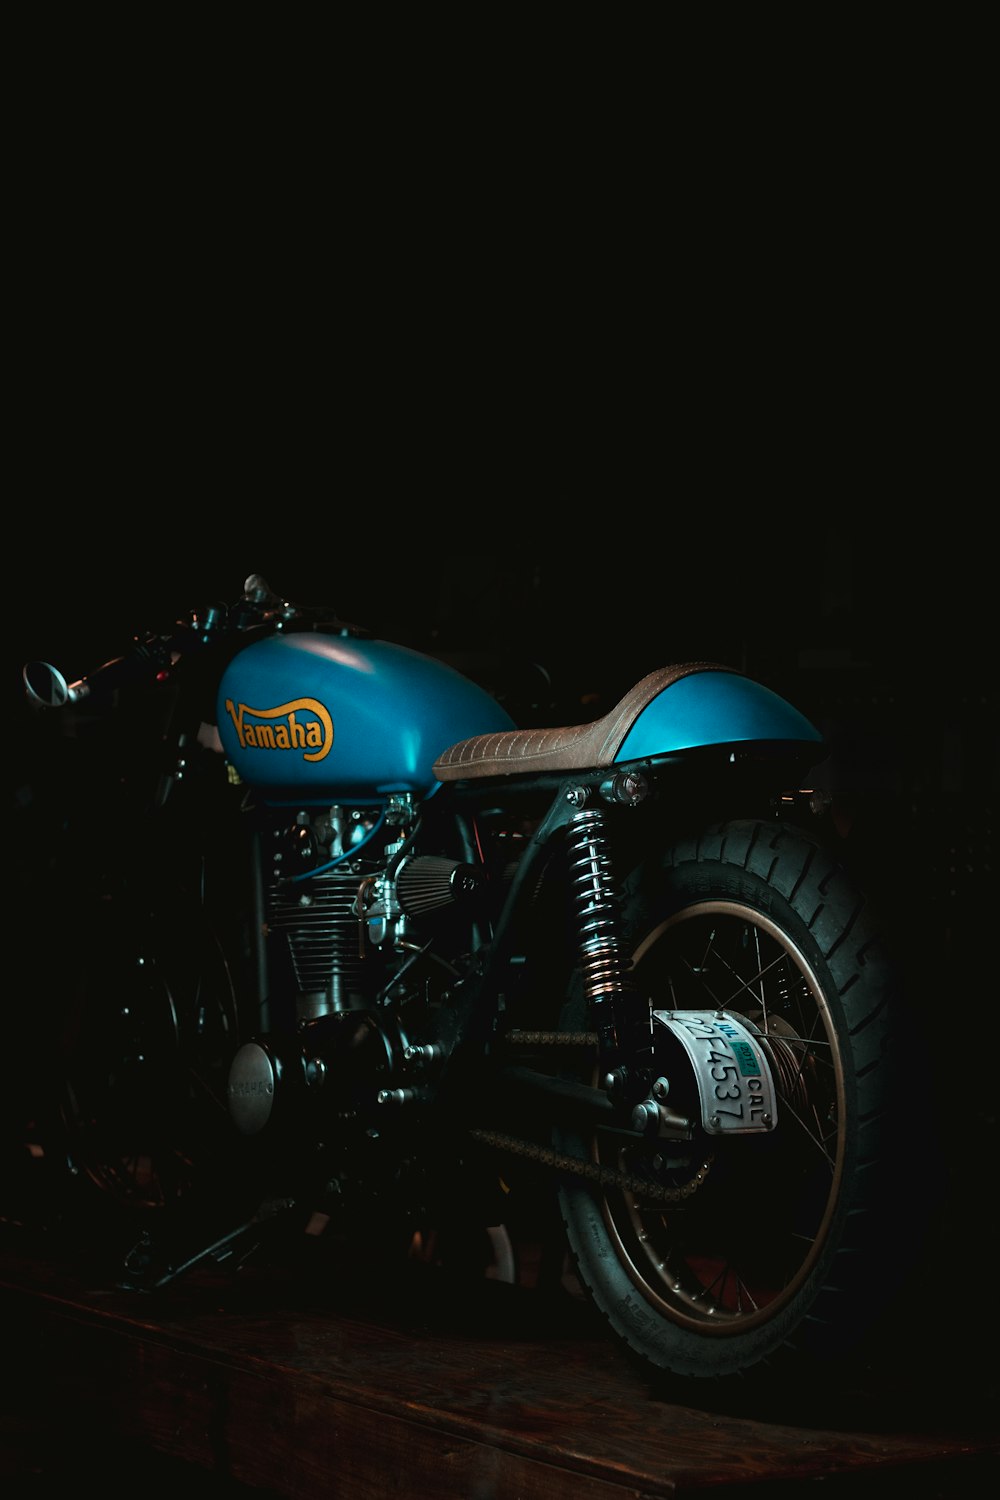 Motocicleta estándar azul